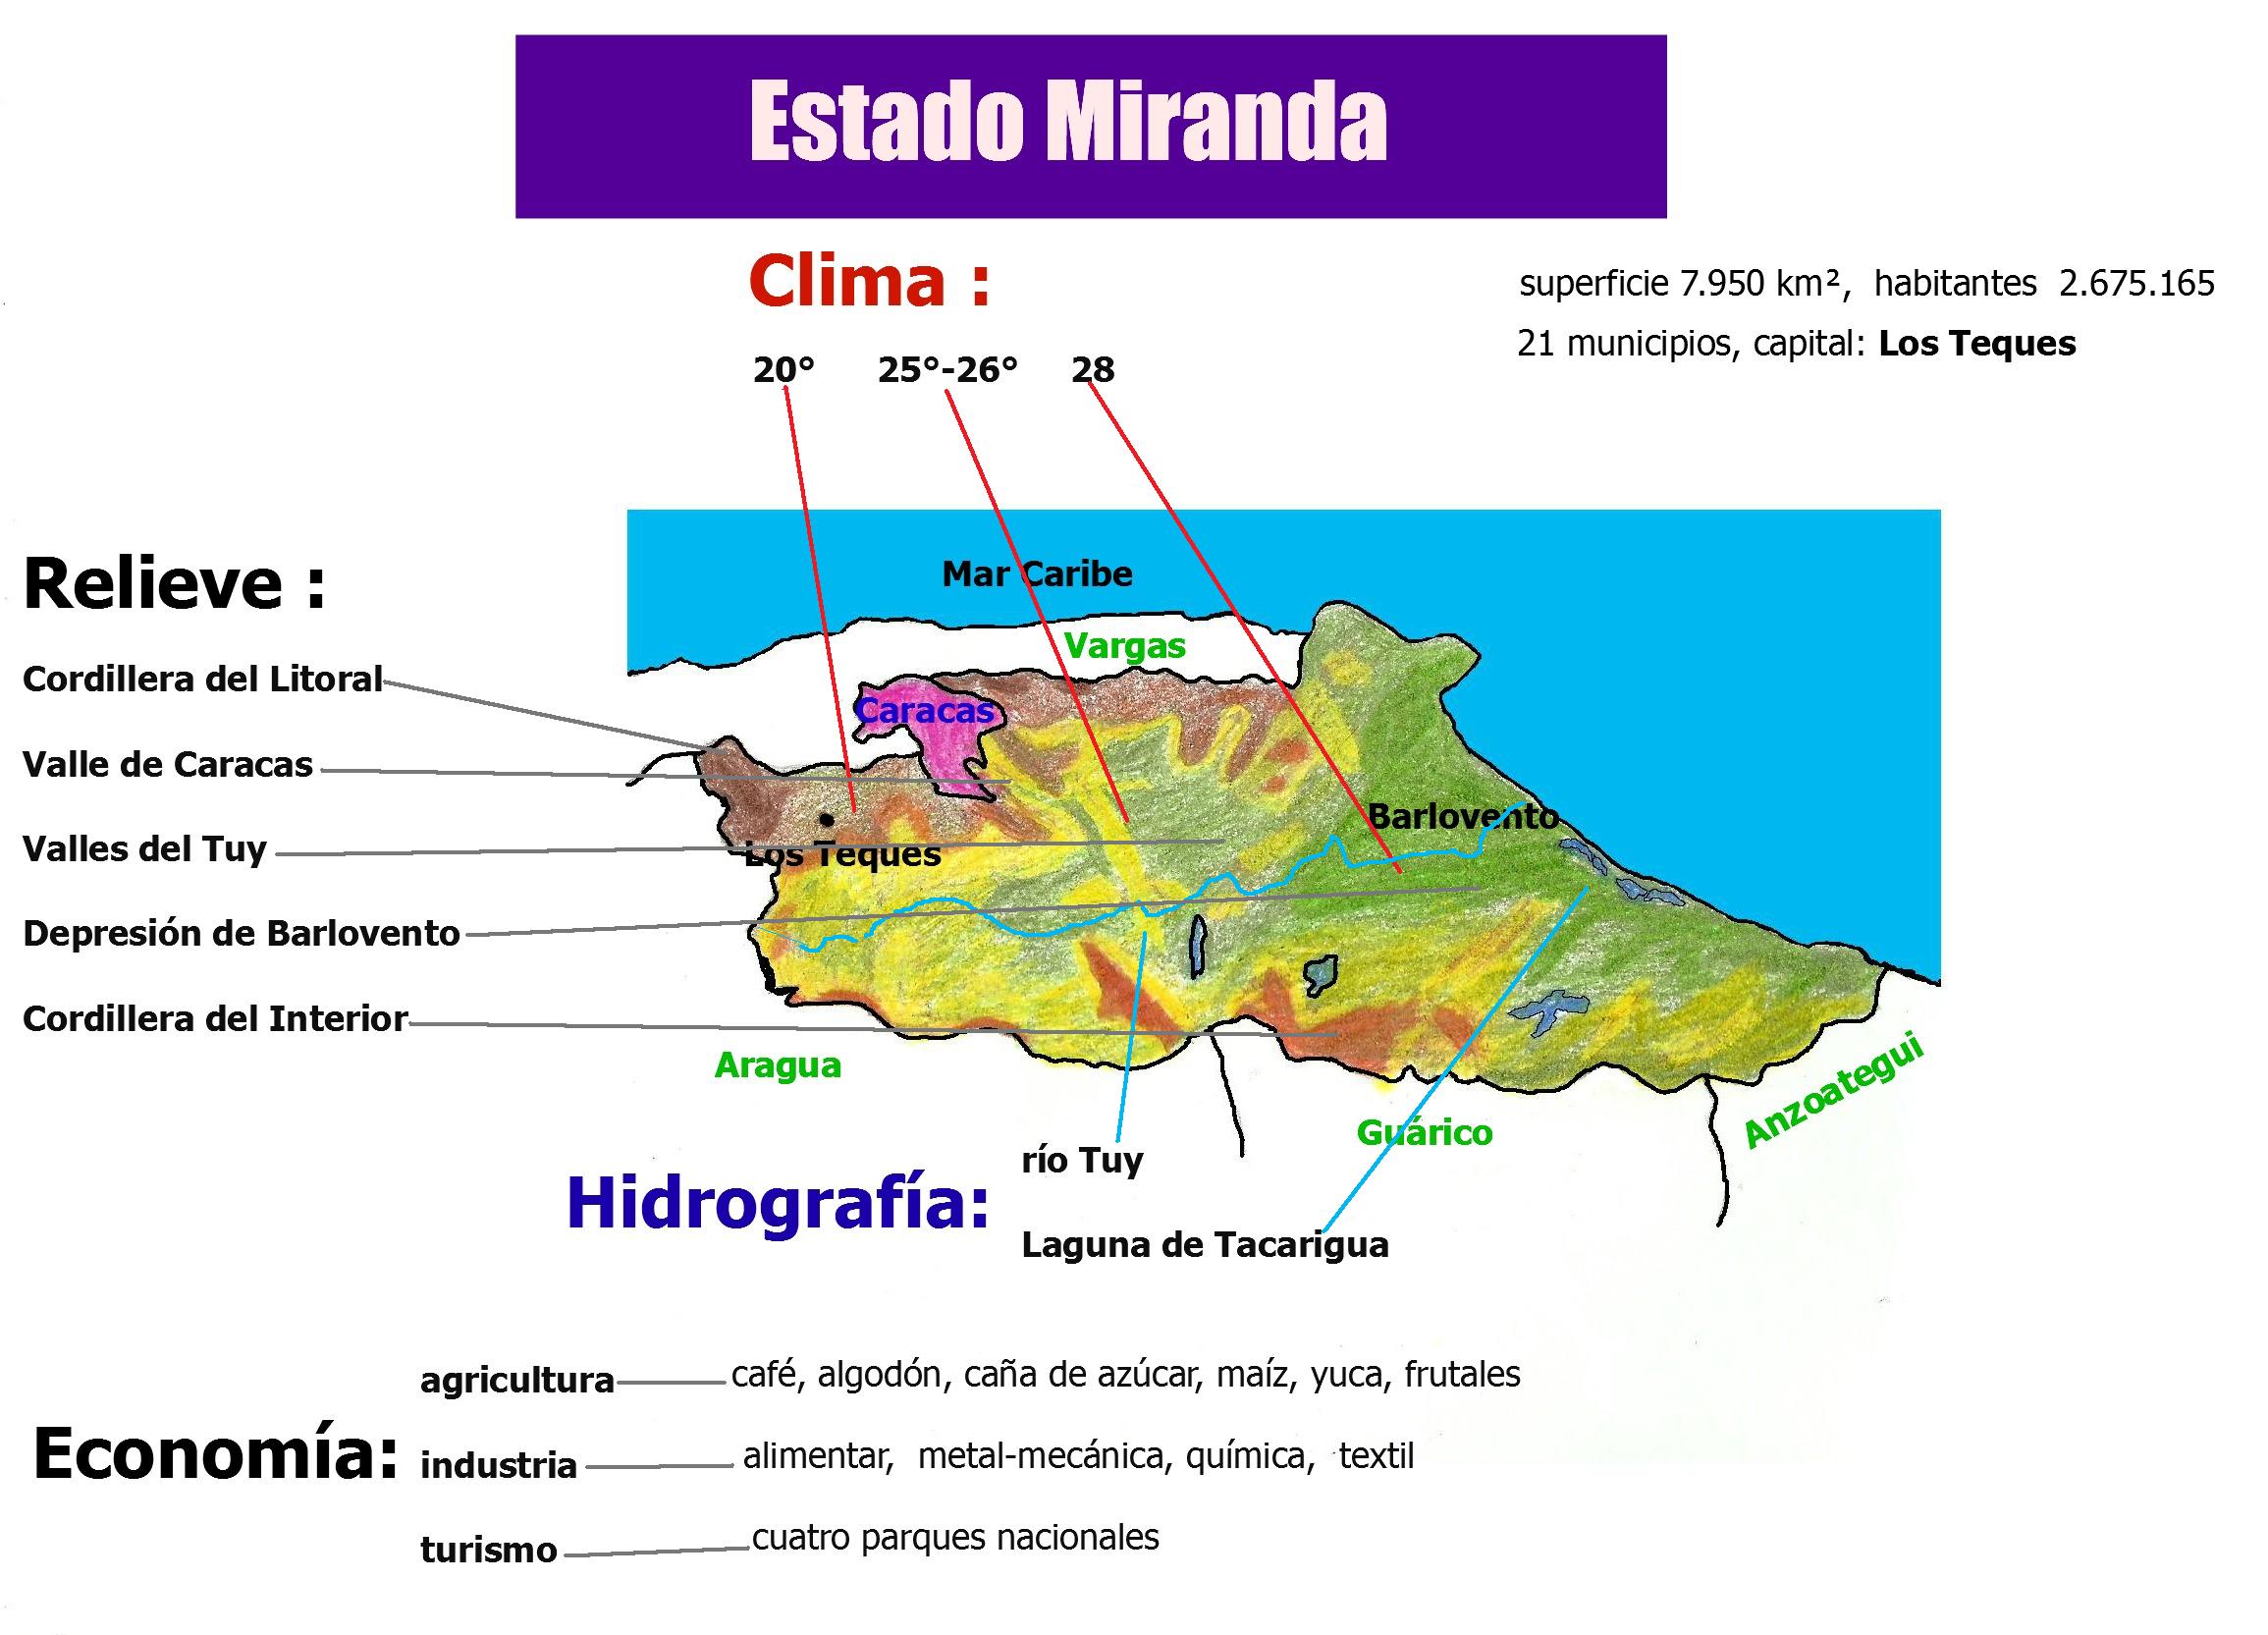 Encommium pureza Cambio La Cordillera Central (Geografía de Venezuela) | Oggisioggino's Blog